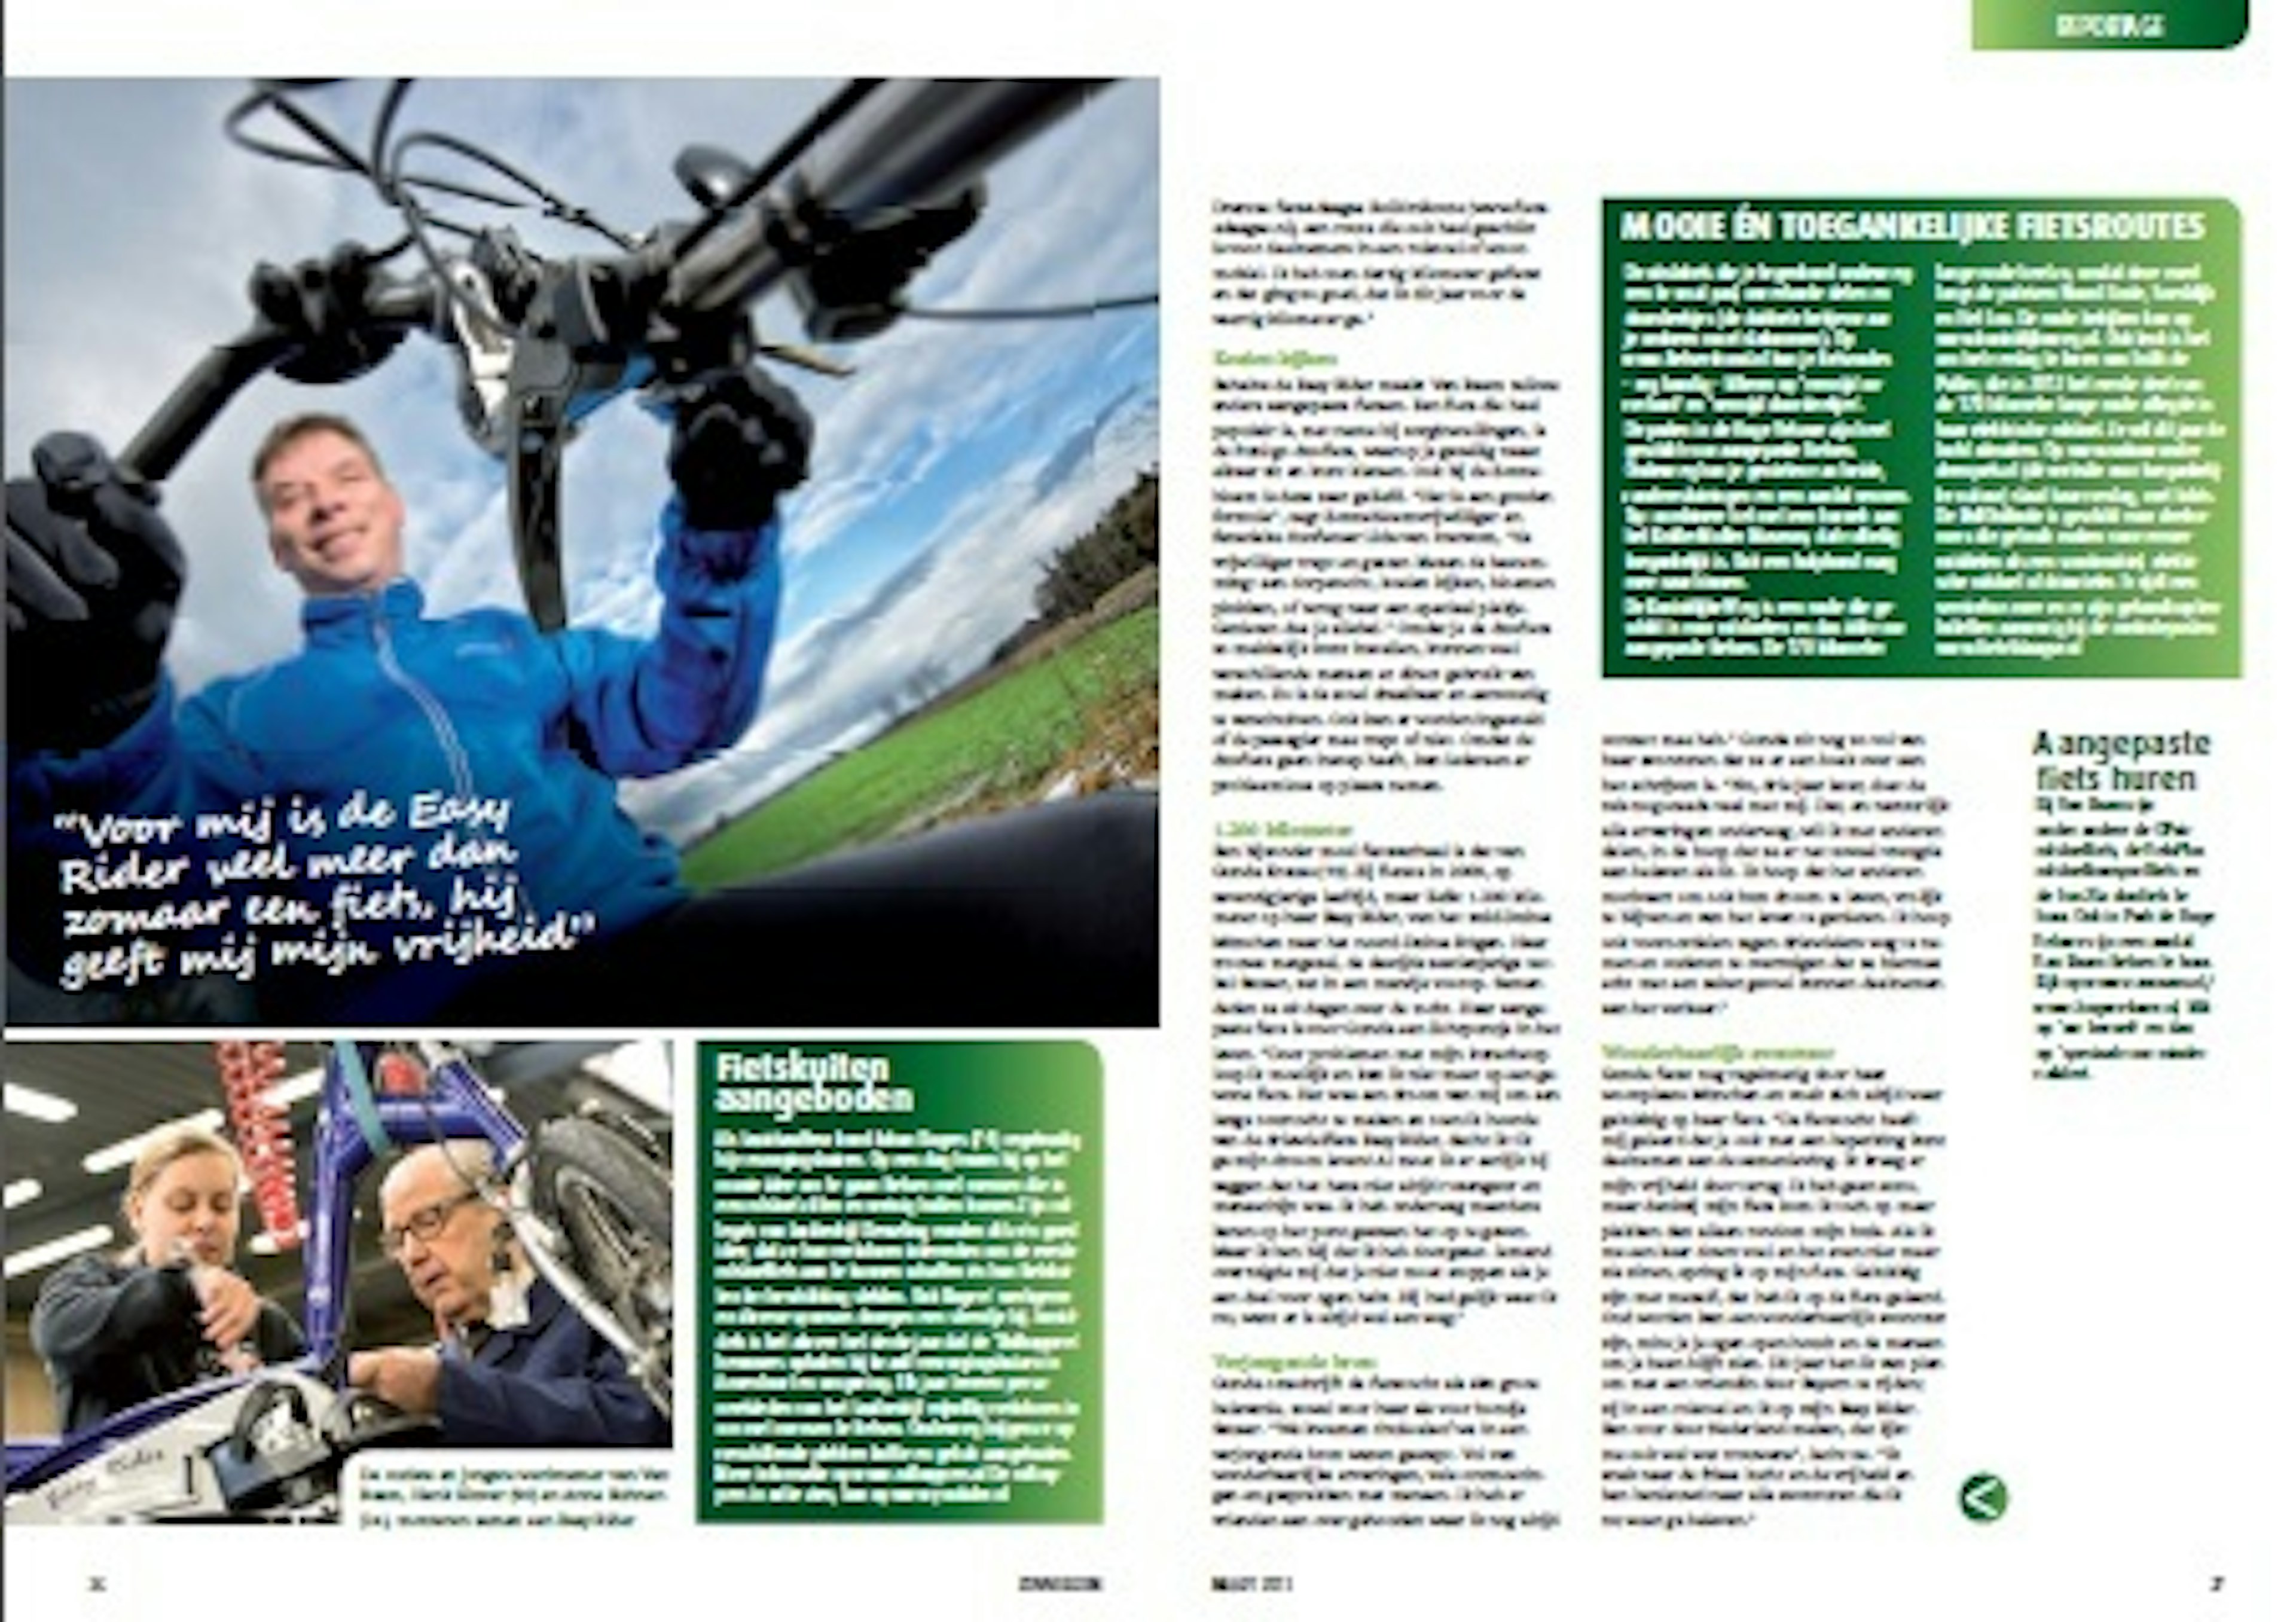 Interview met Diederik over zijn Easy Rider driewielfiets in magazine voor mensen met beperking  